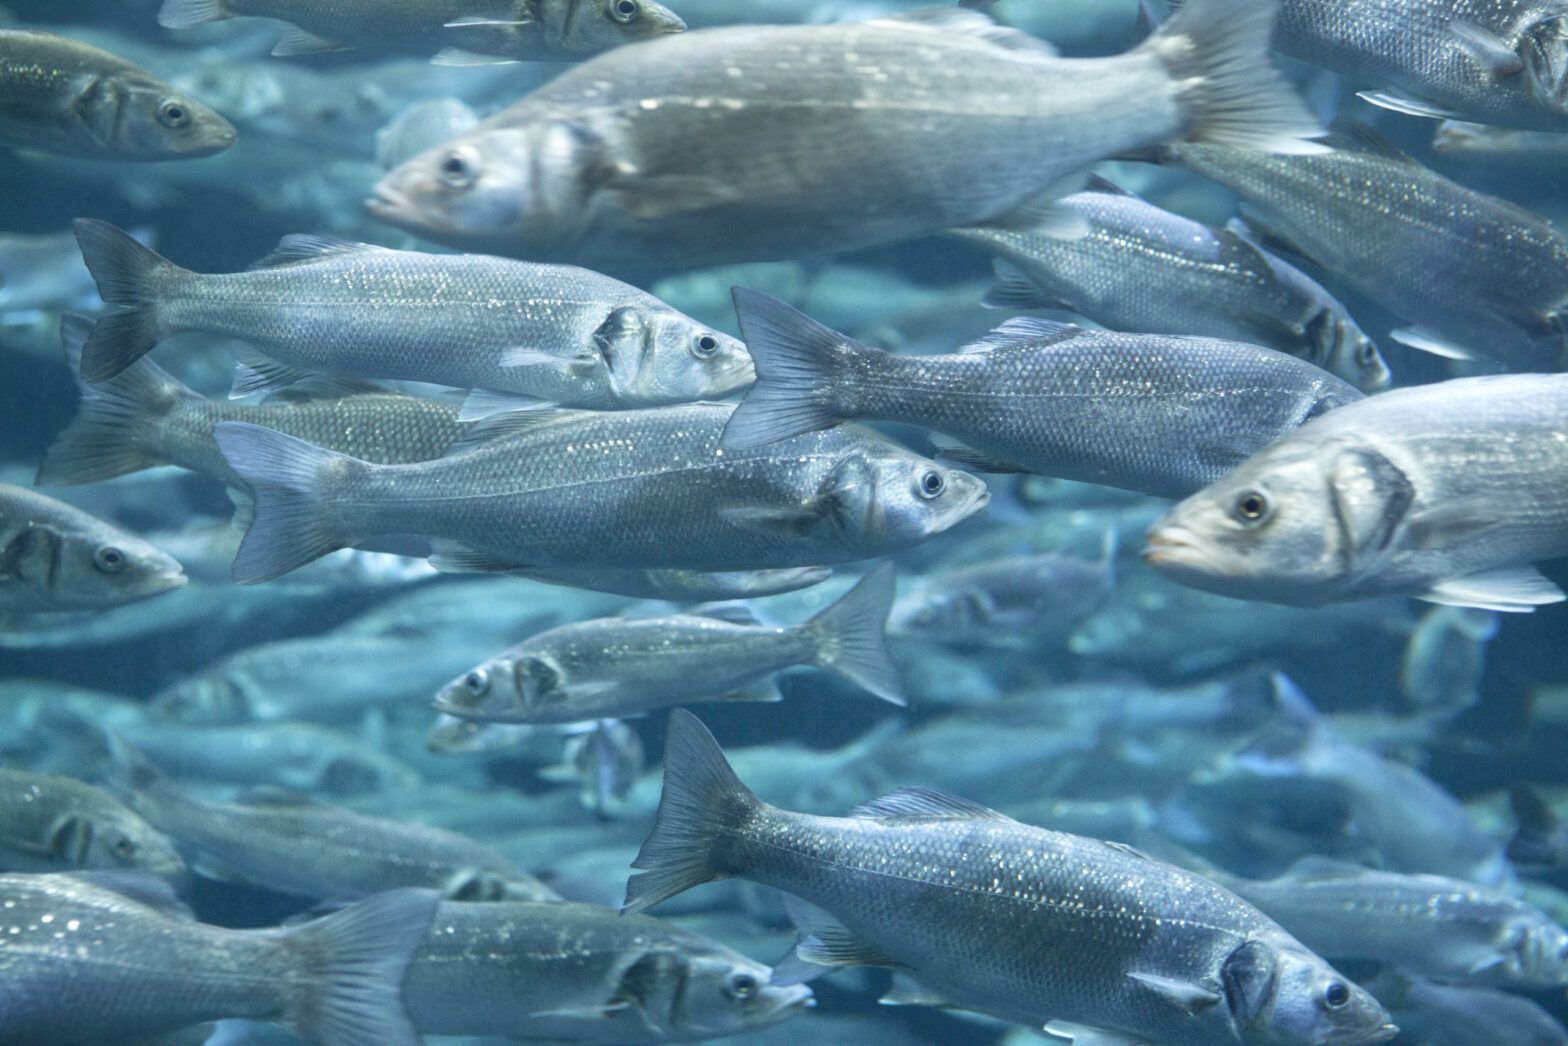 The risks and rewards of aquaculture